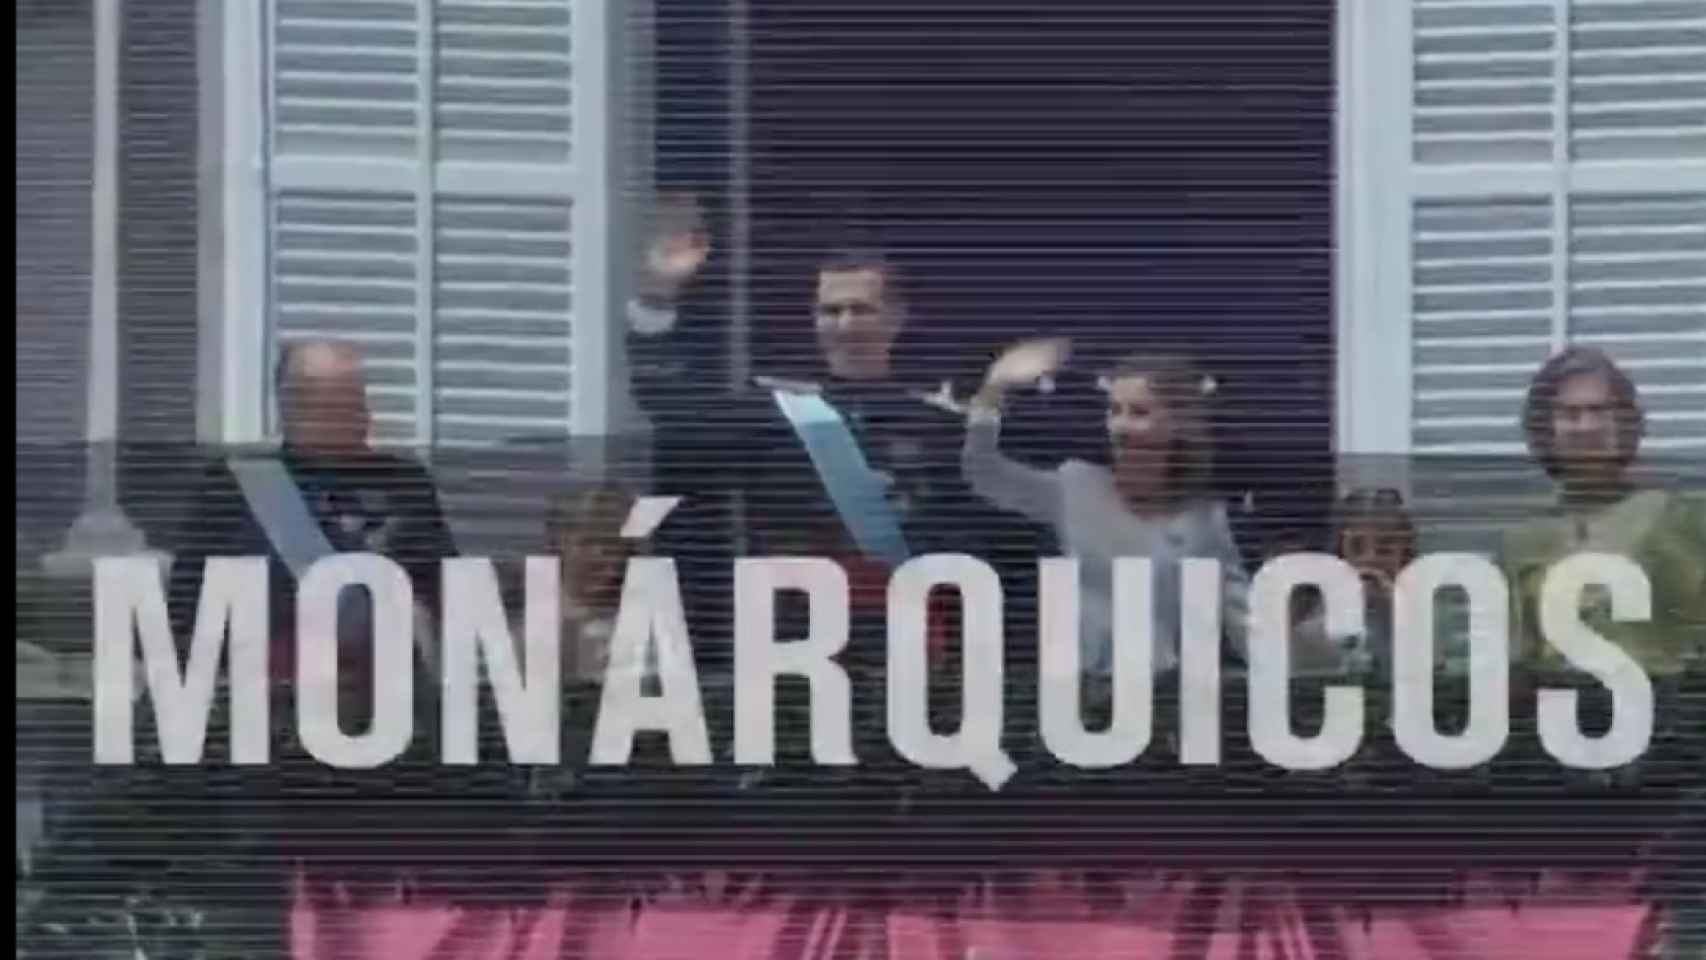 Captura de pantalla del vídeo difundido por Podemos en redes sociales.